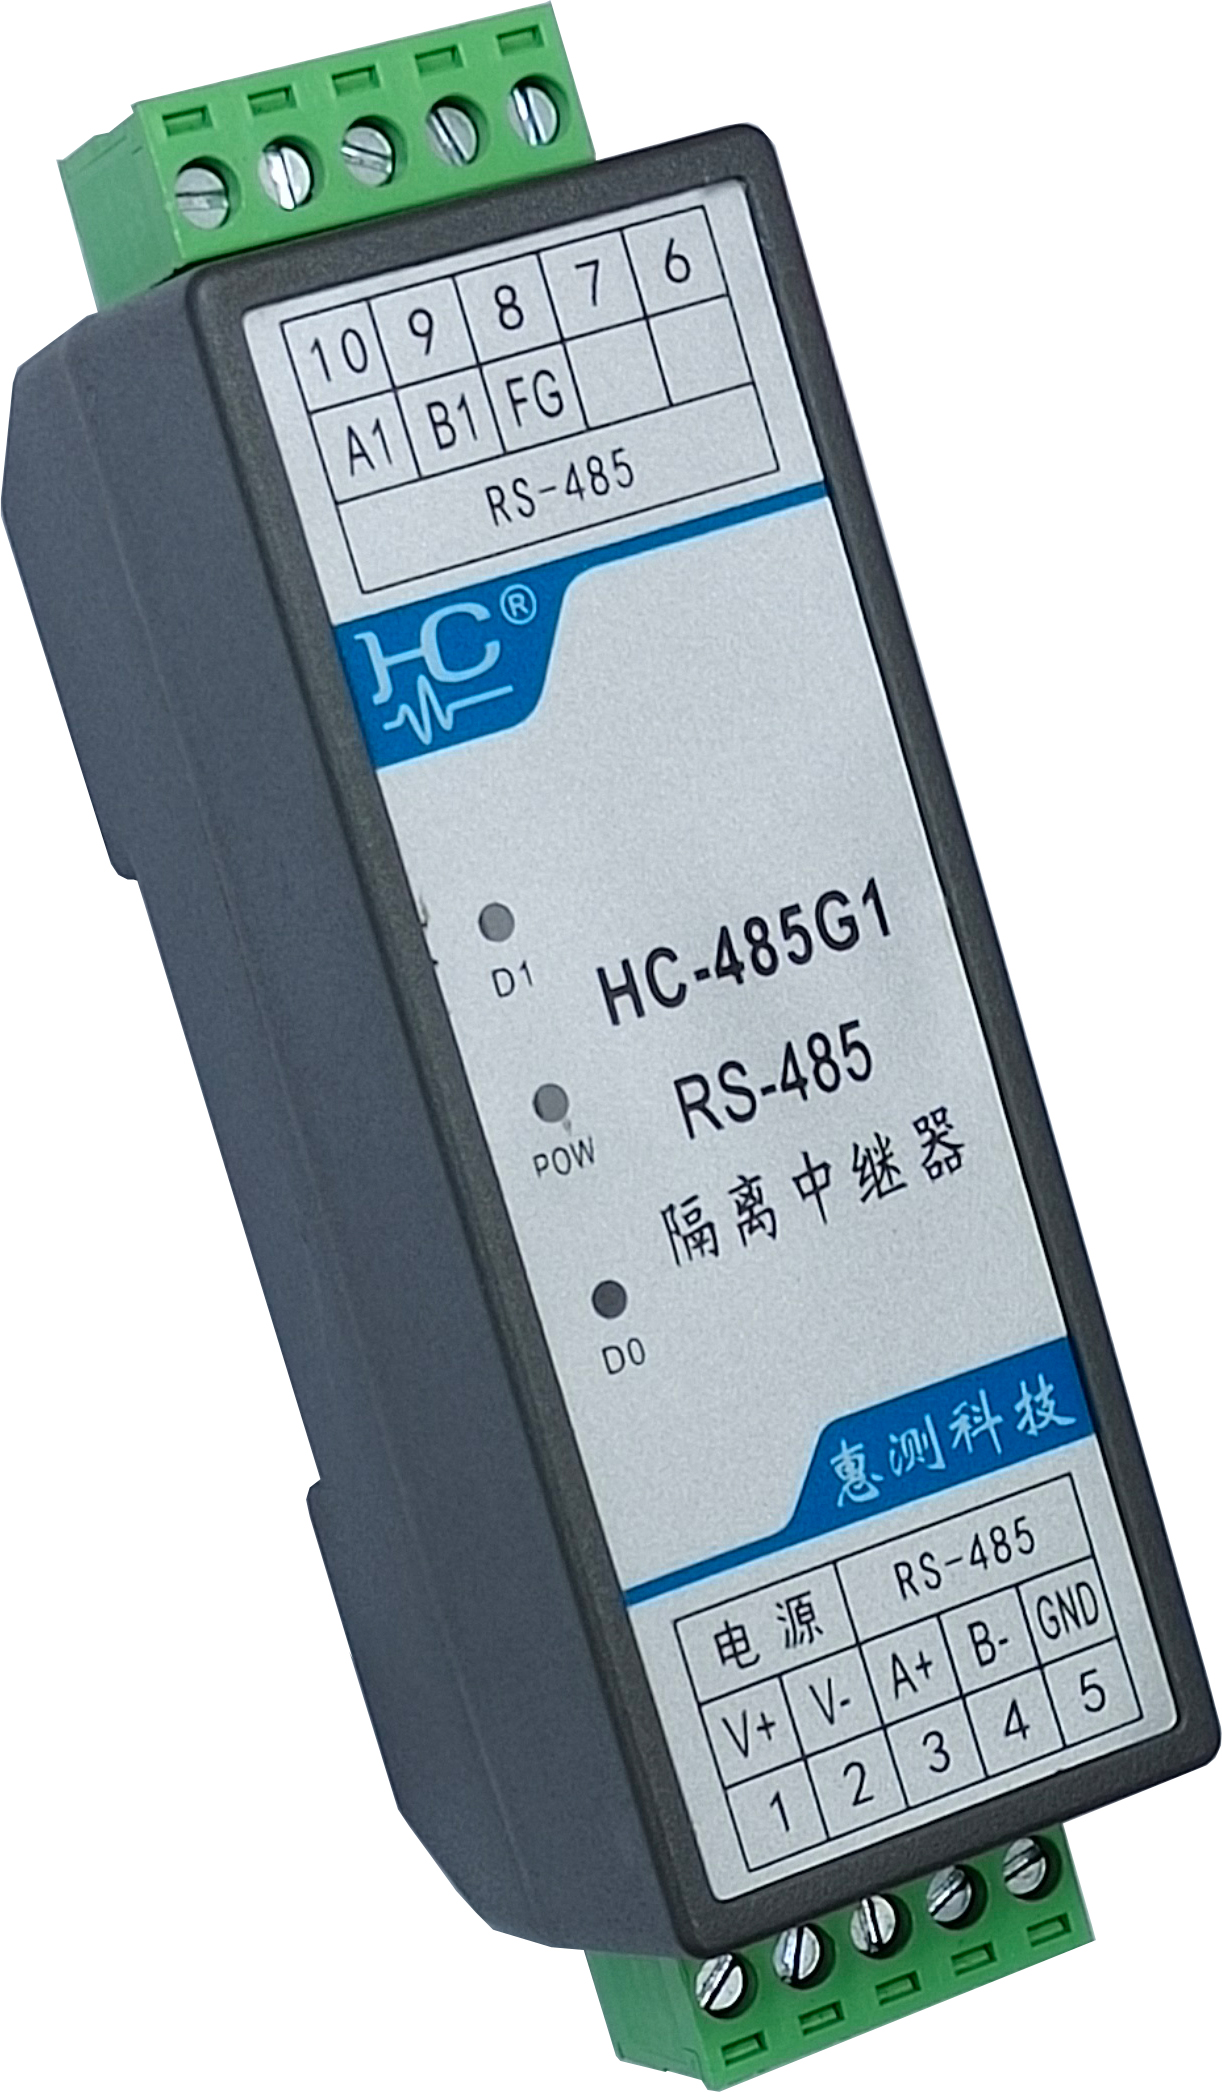 HC-485G 485中继器  